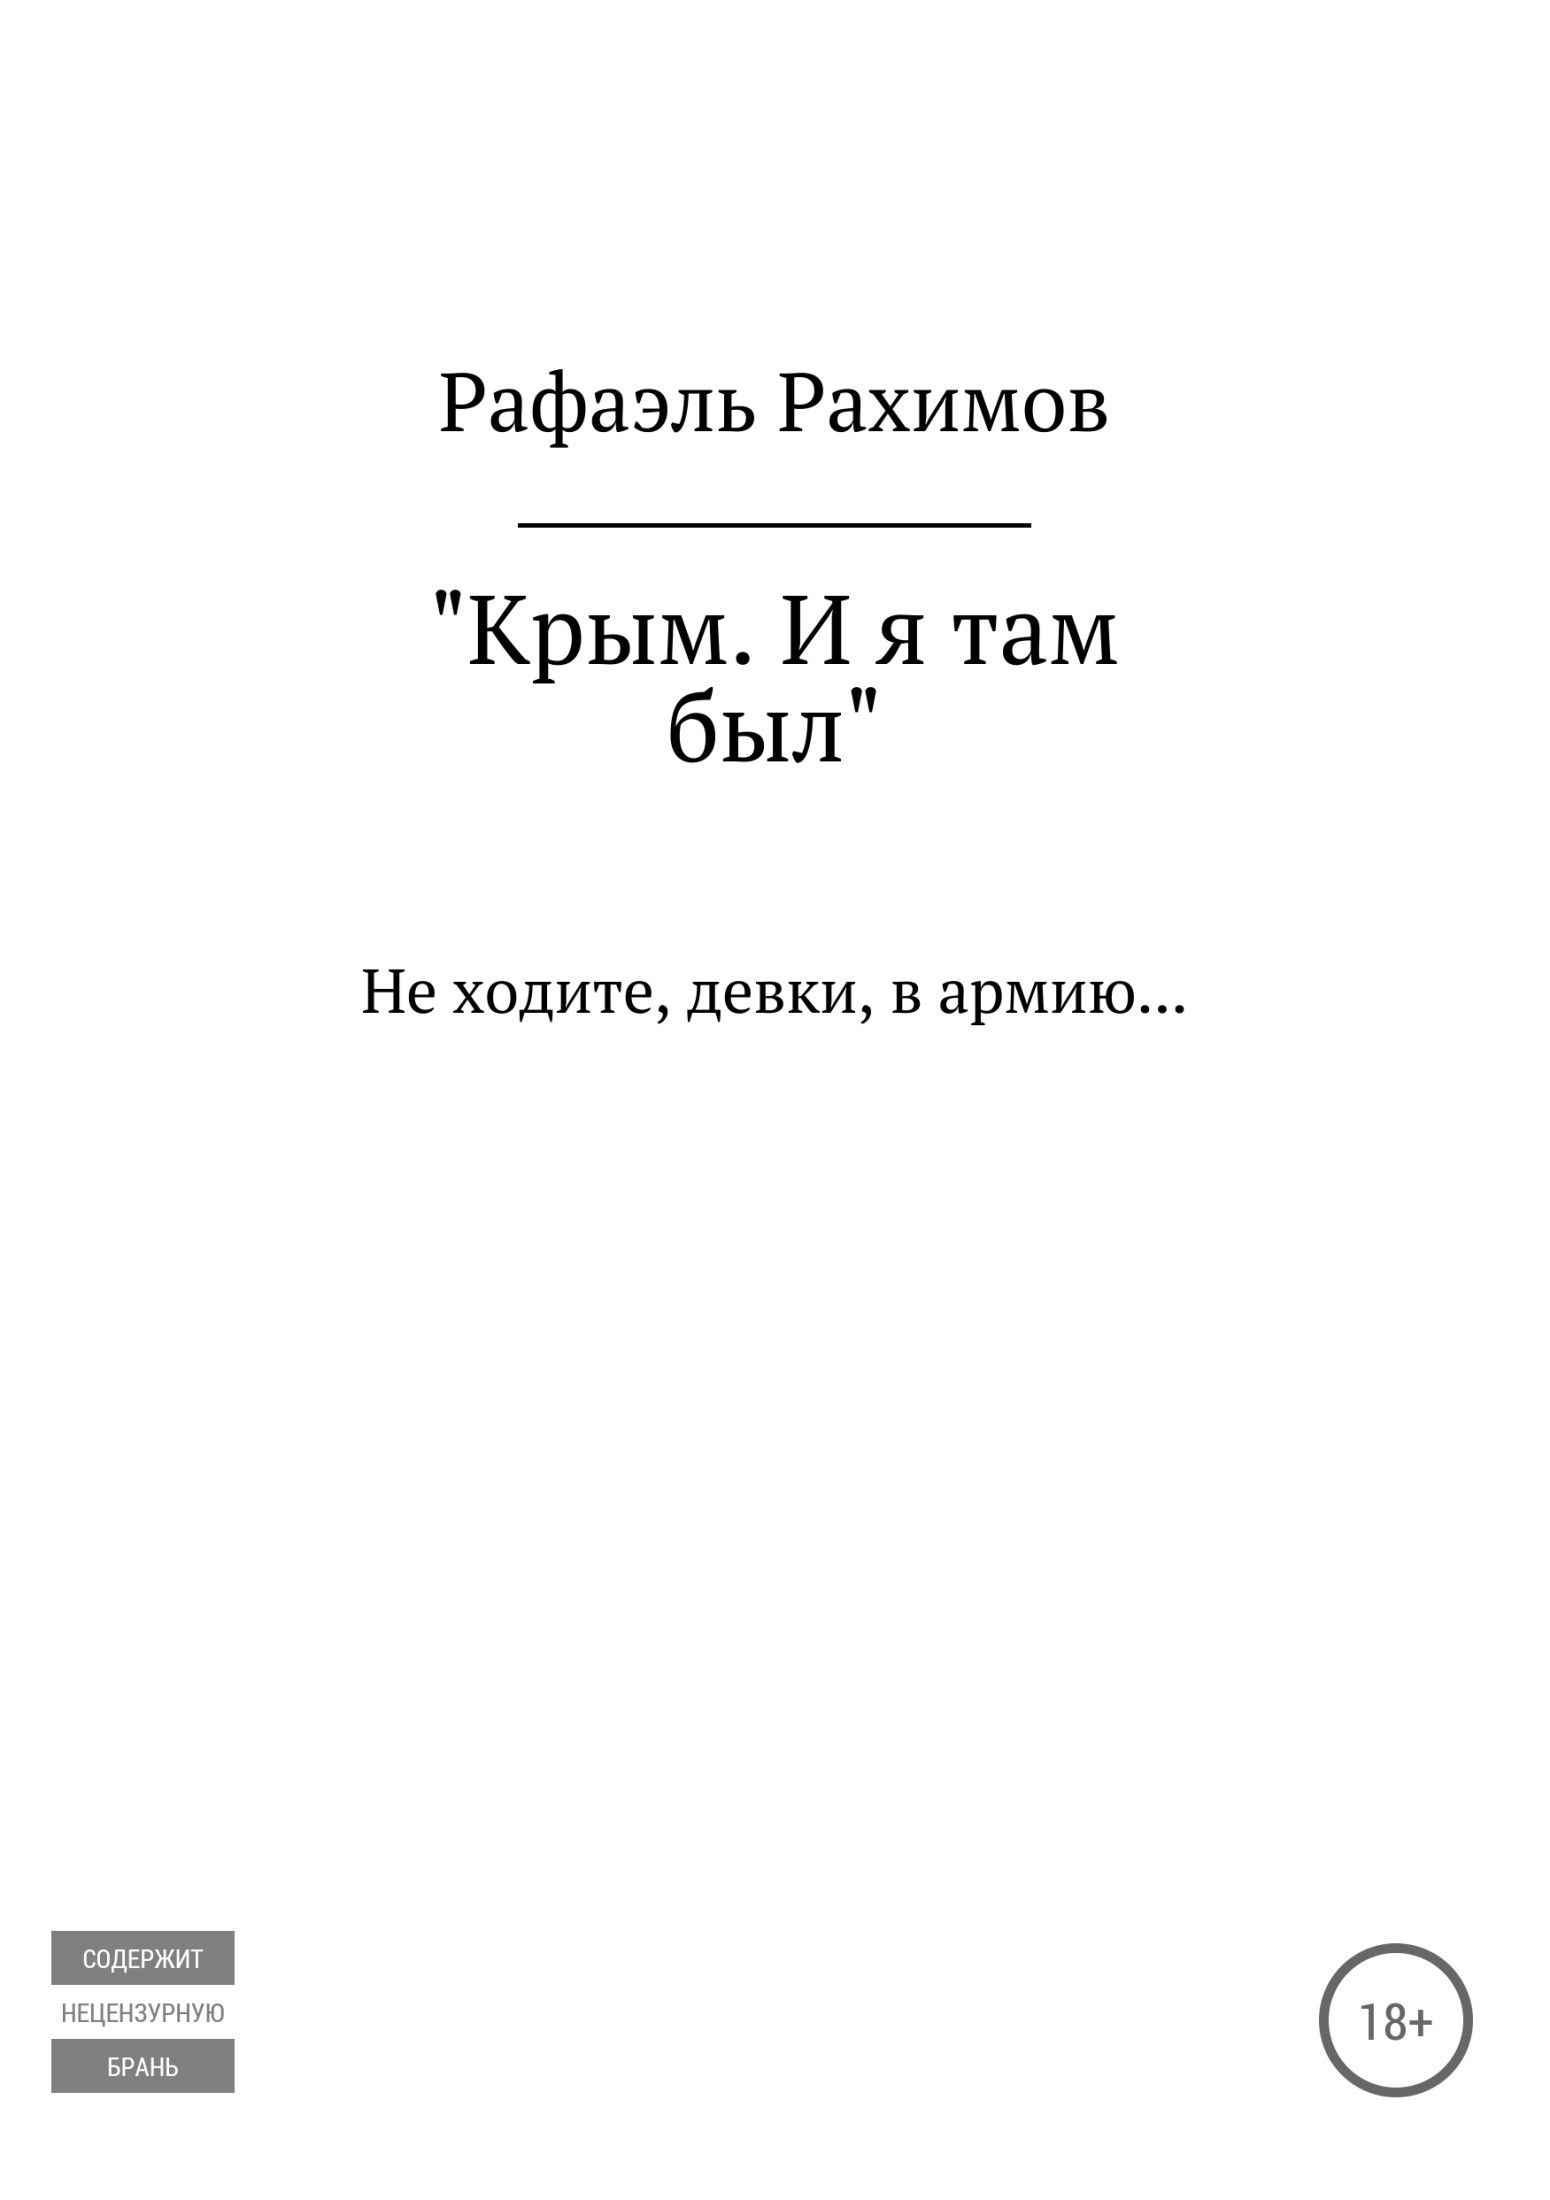 Книга Крым. И я там был из серии , созданная Рафаэль Рахимов, может относится к жанру Документальная литература. Стоимость электронной книги Крым. И я там был с идентификатором 35735665 составляет 0 руб.